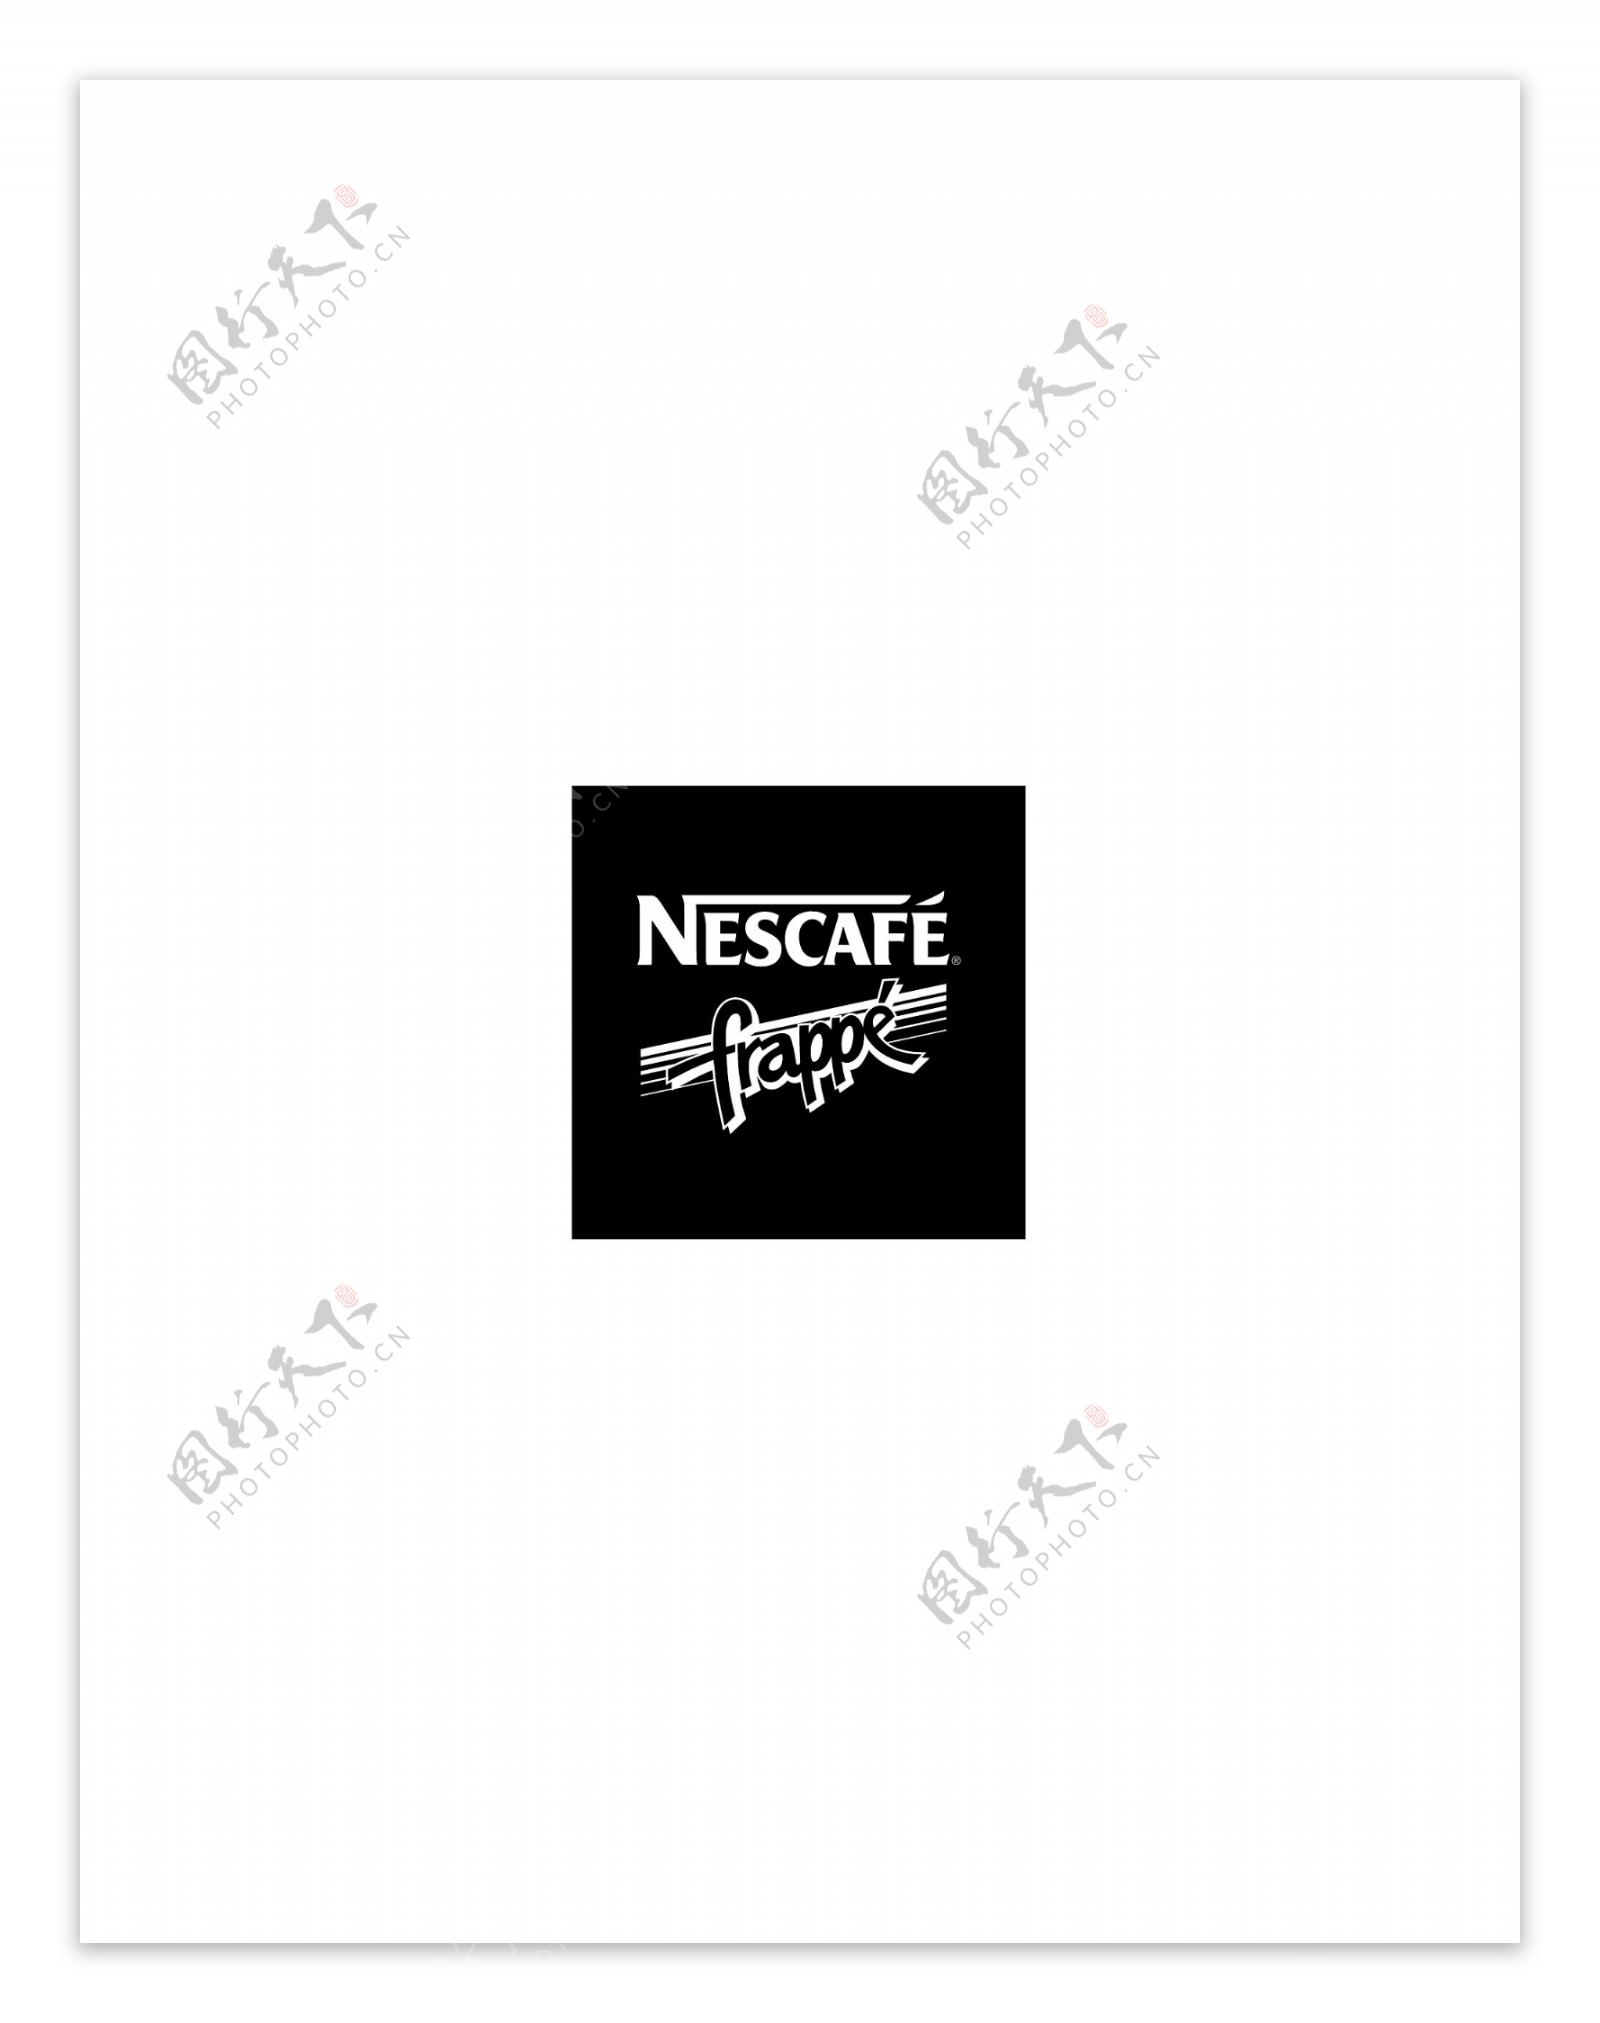 NescafeFrappelogo设计欣赏NescafeFrappe饮料品牌标志下载标志设计欣赏